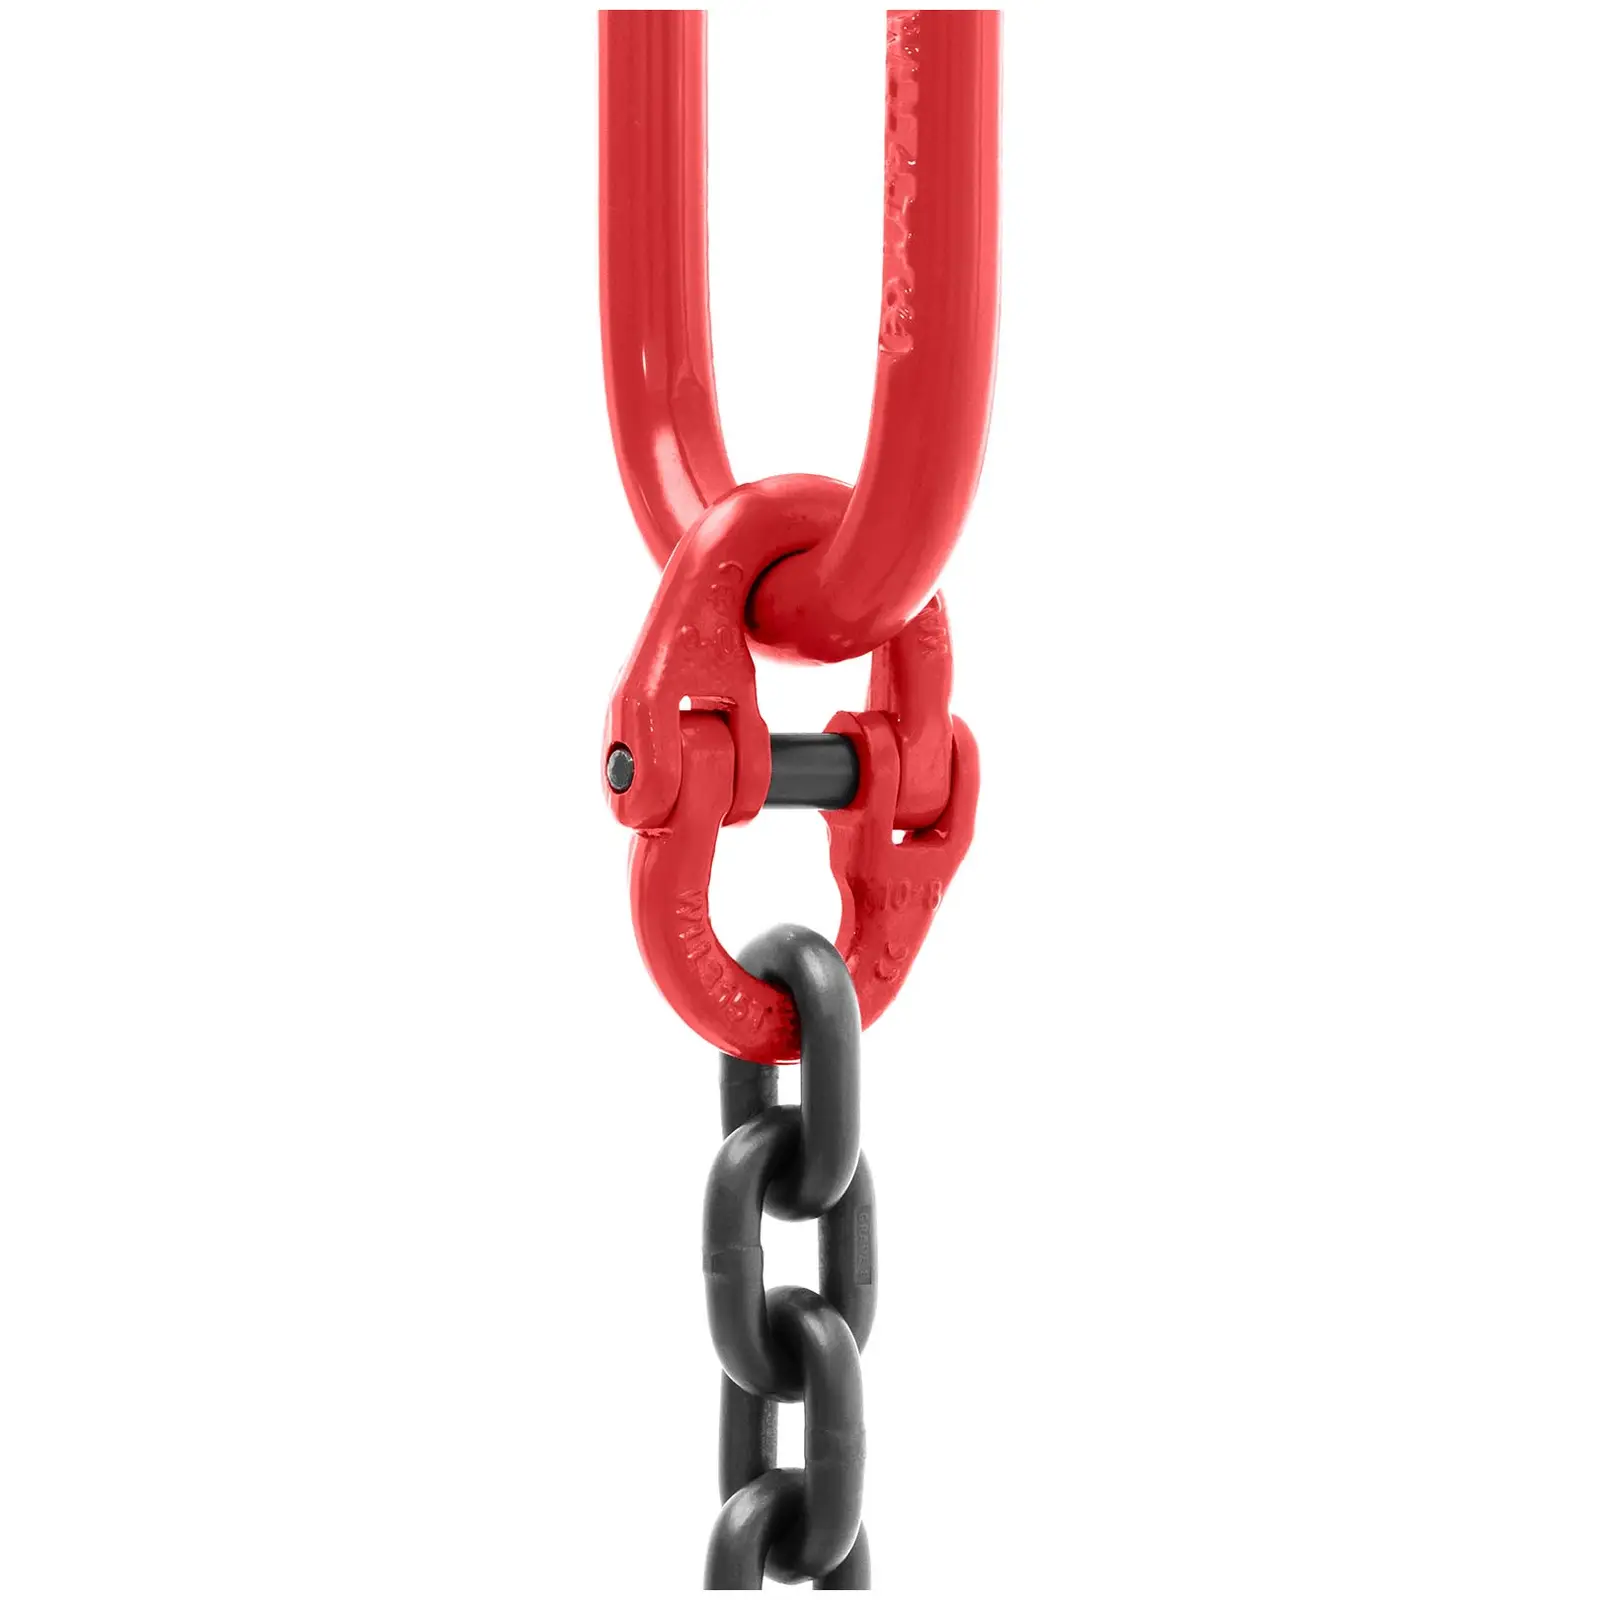 Zawiesie łańcuchowe - 3150 kg - 2 m - czarne/czerwone